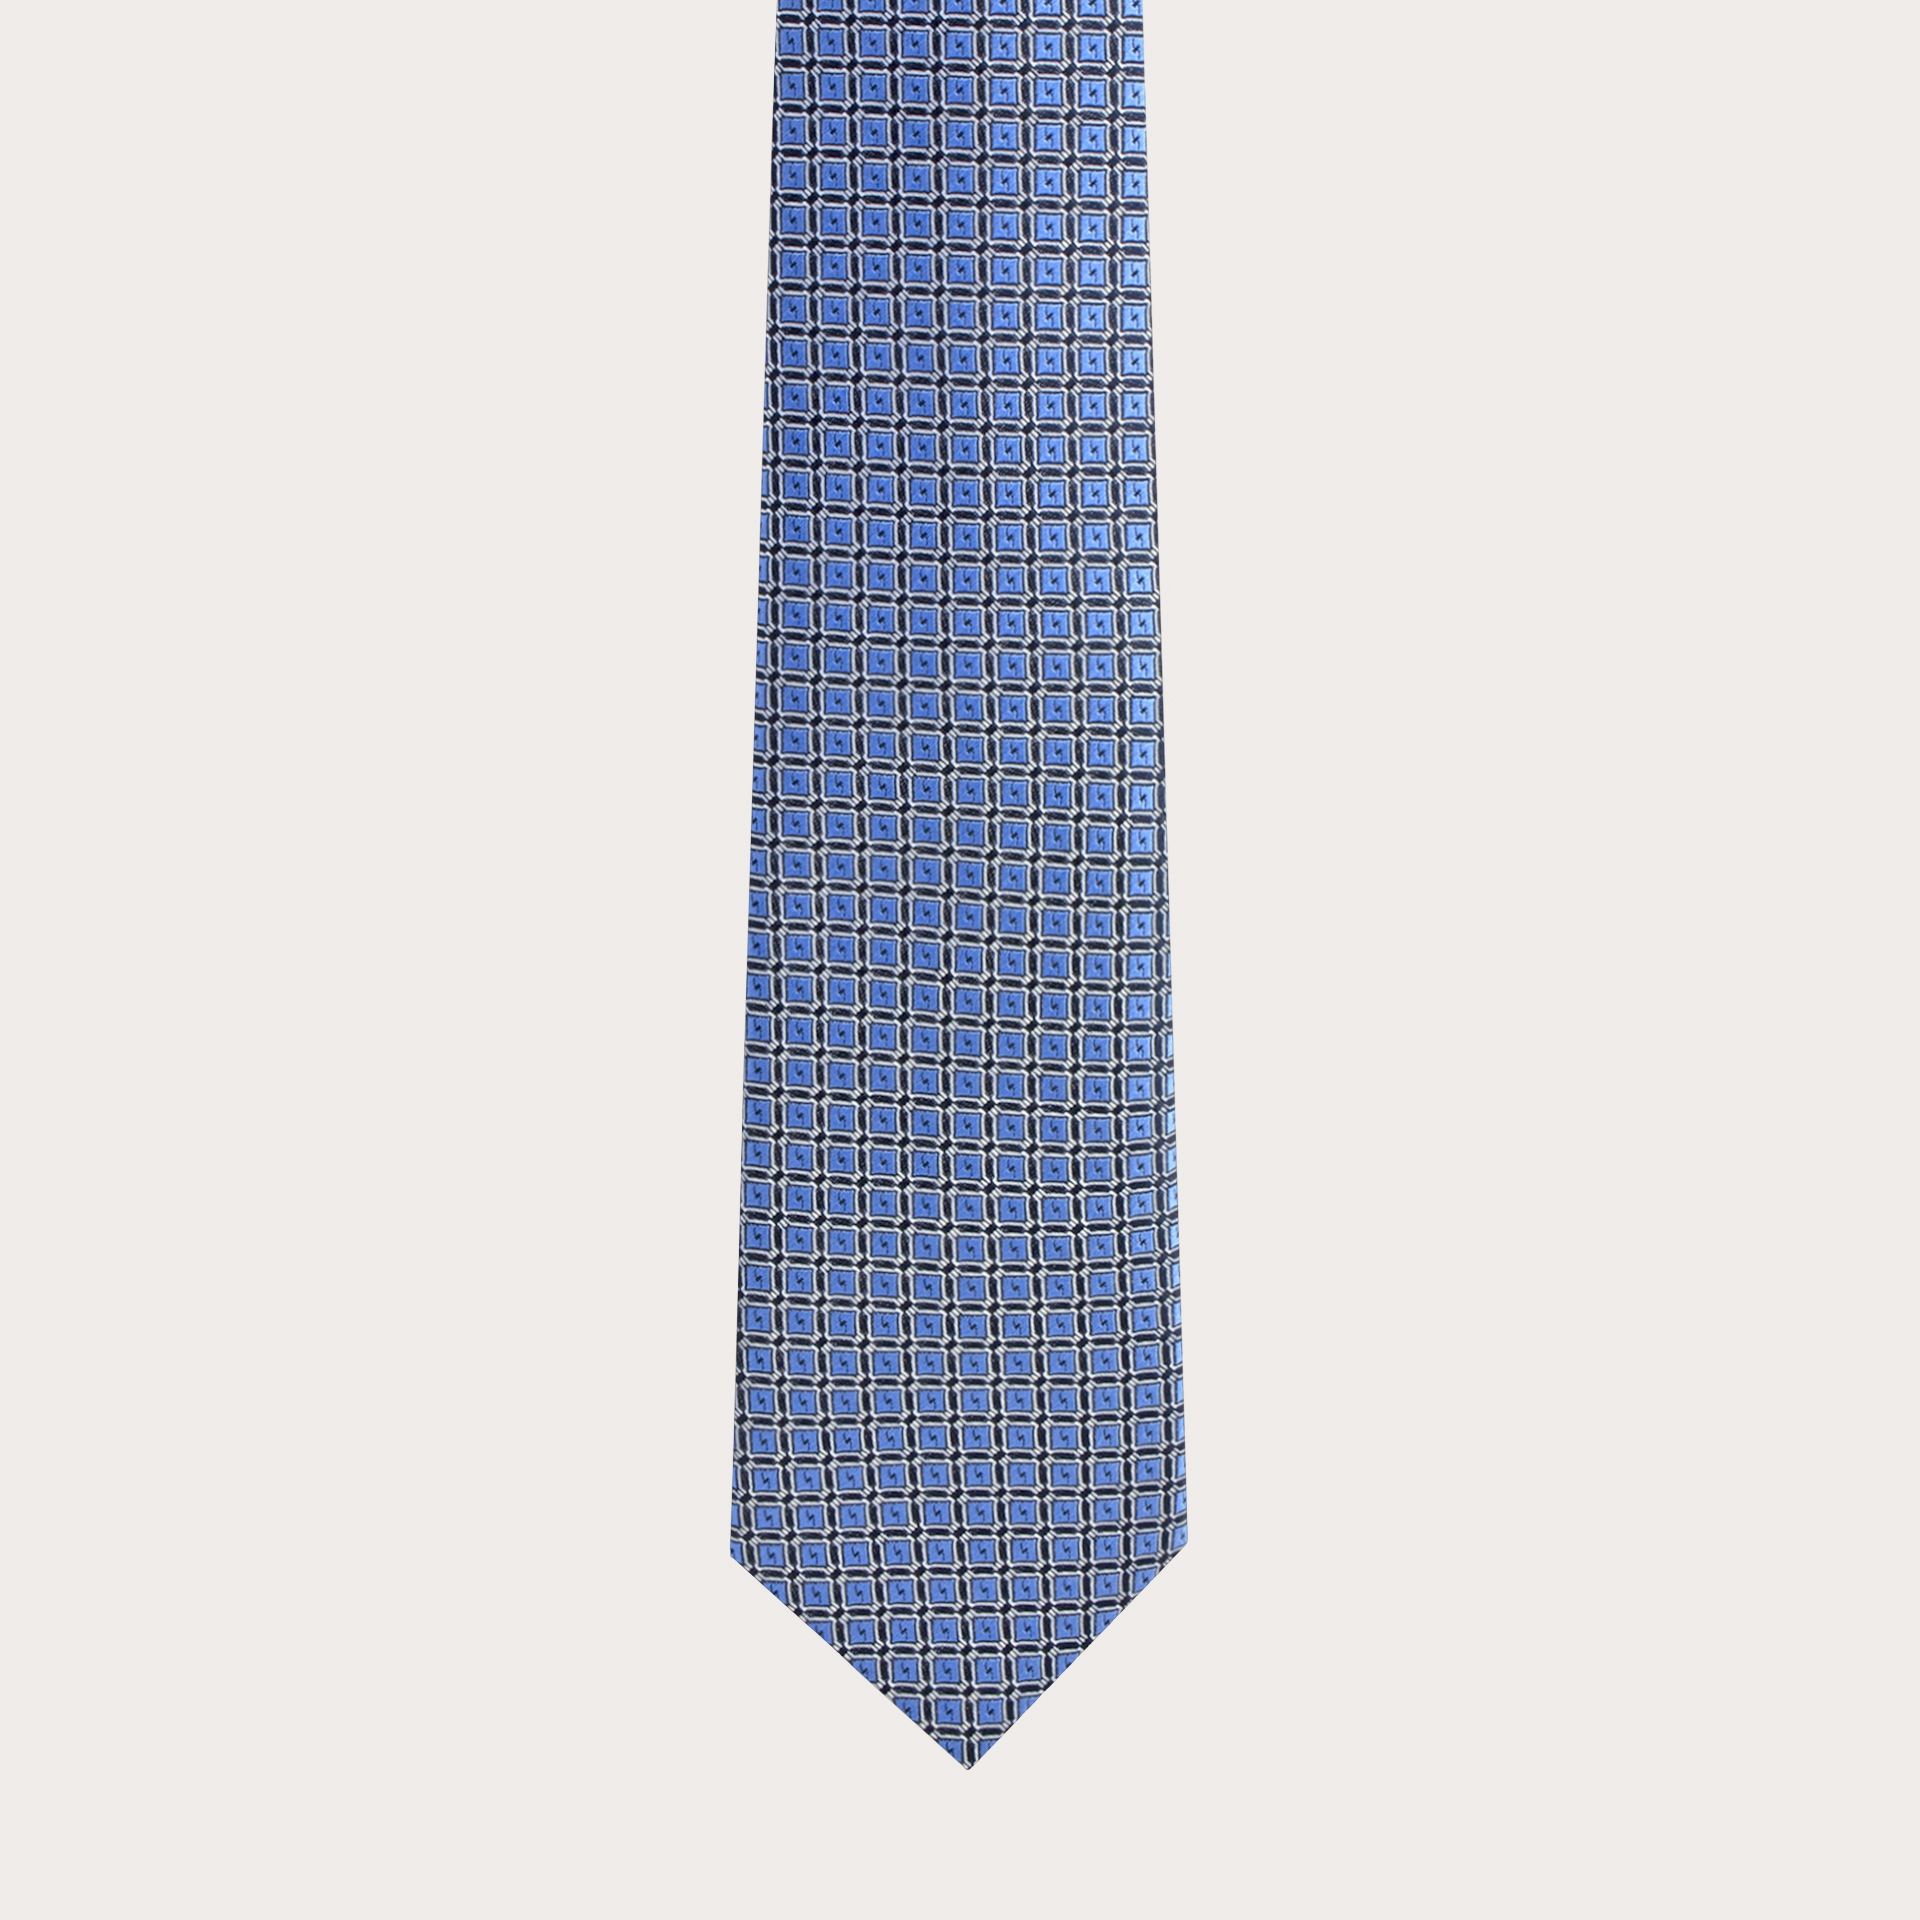 Cravate bleu clair avec motif de carrés